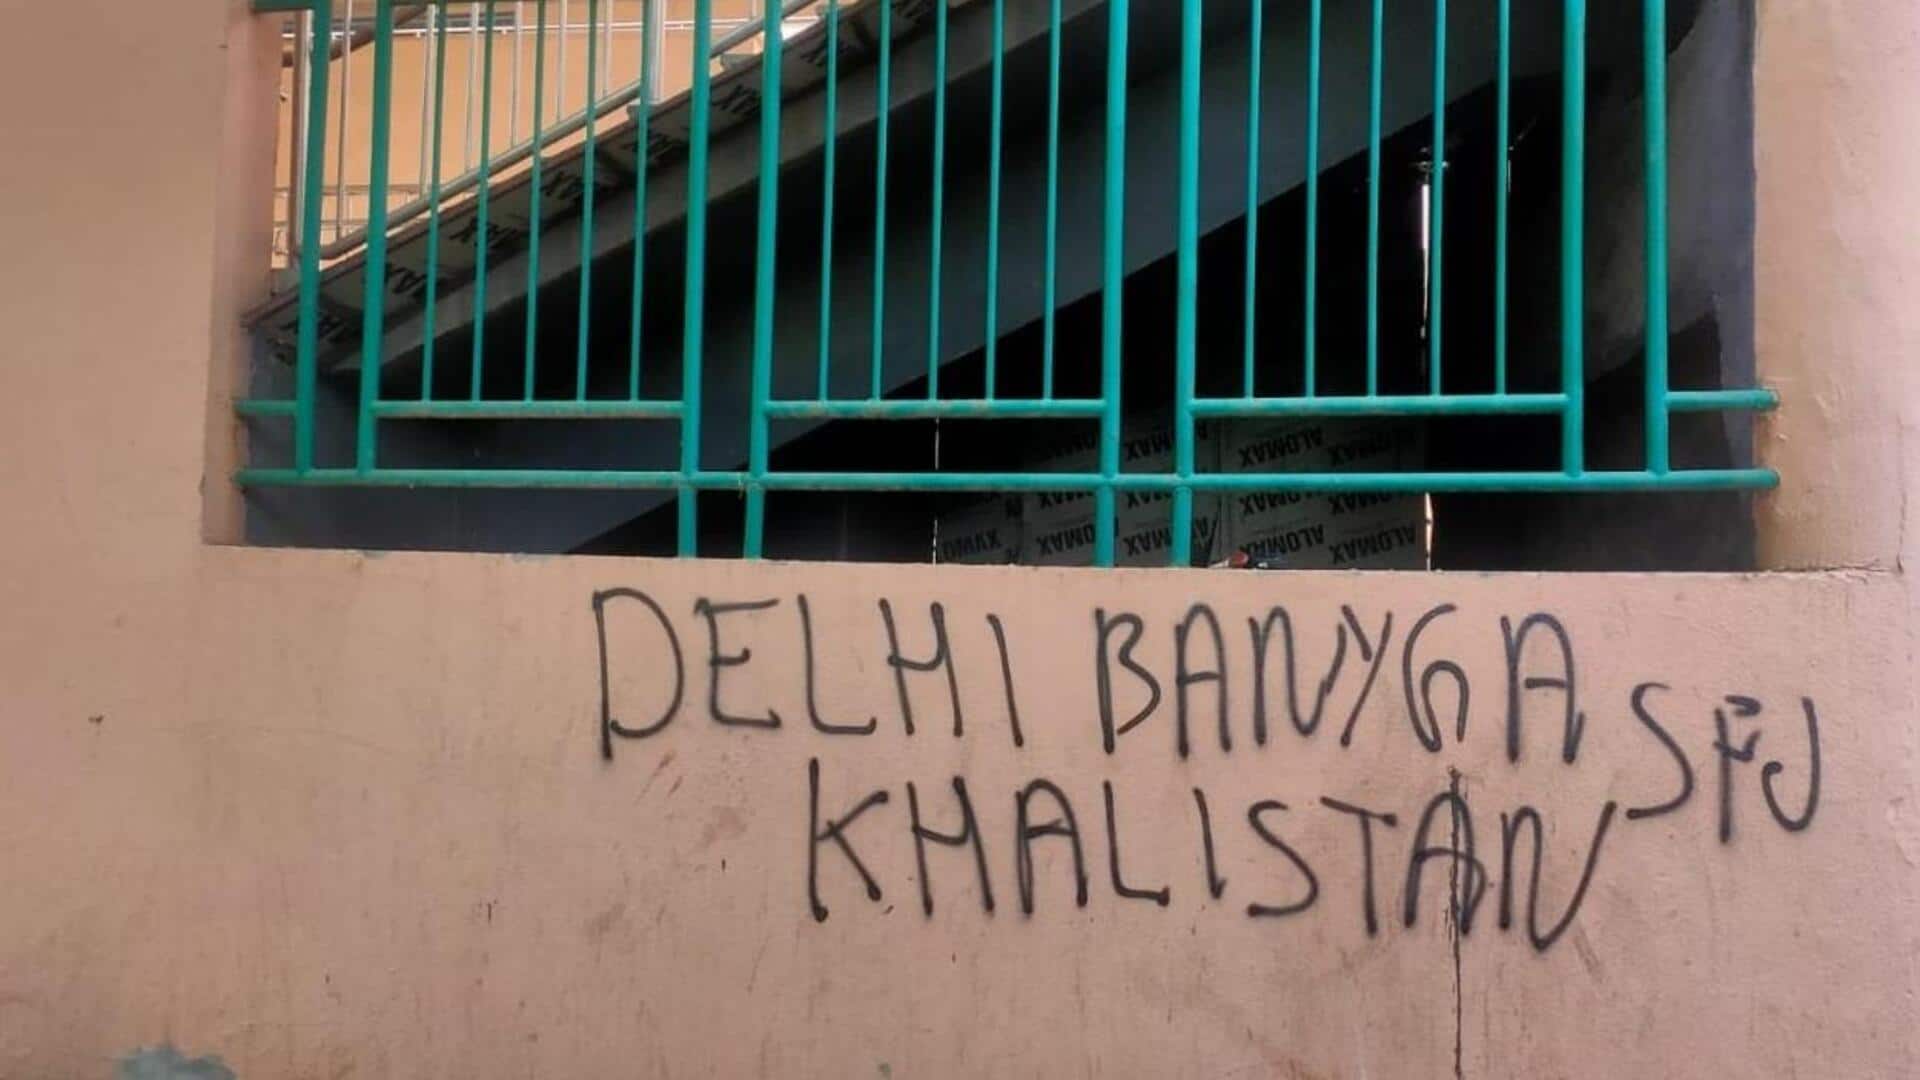 दिल्ली: मेट्रो स्टेशनों पर खालिस्तान समर्थक नारे लिखने पर पंजाब से 2 गिरफ्तार